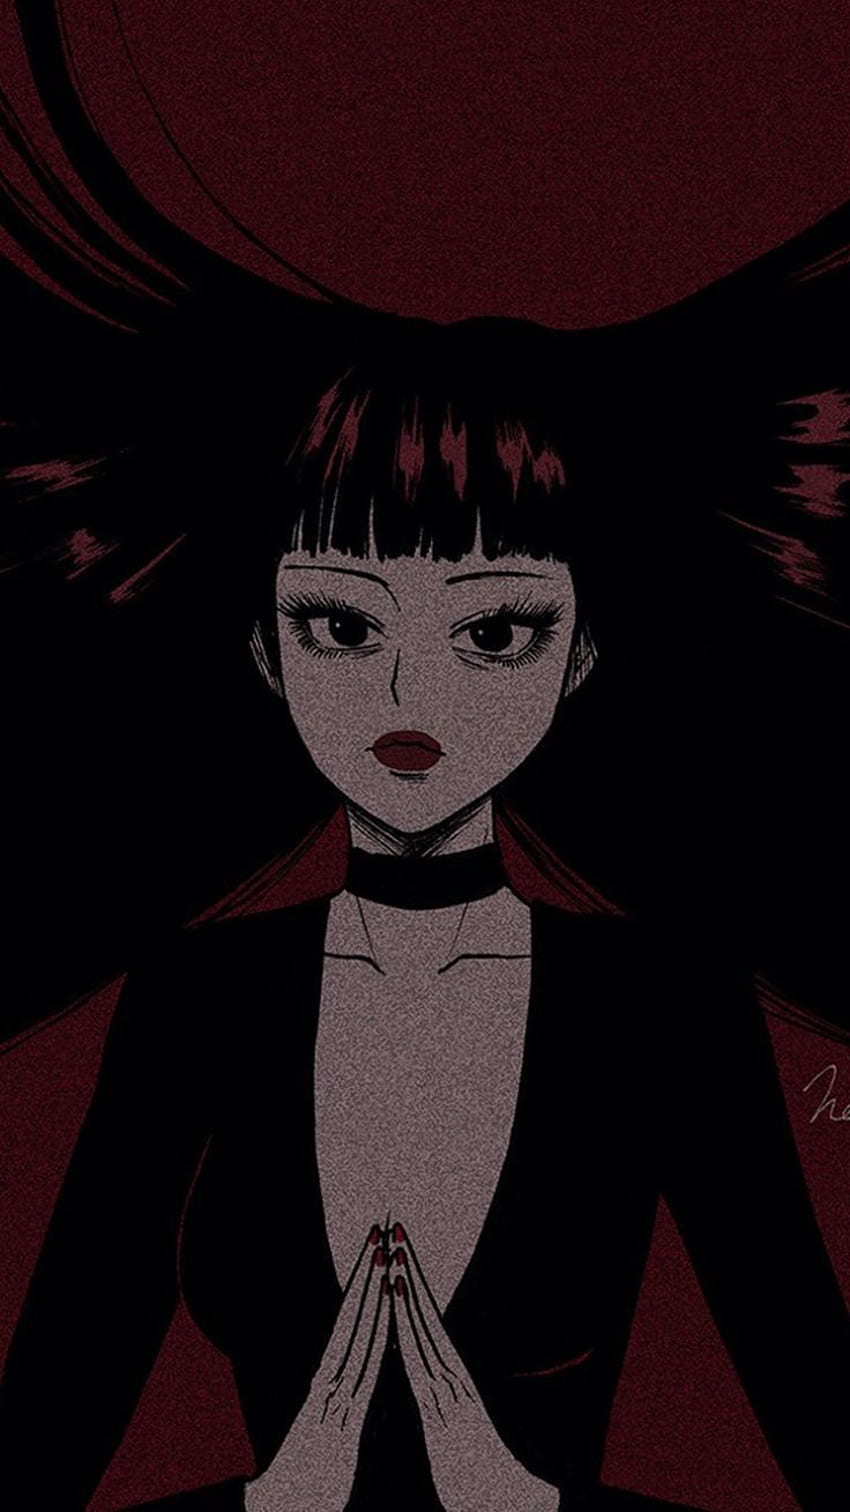 Otaku Anime Pastel Goth Girl Grunge Wallpaper by wbdesignz | Society6